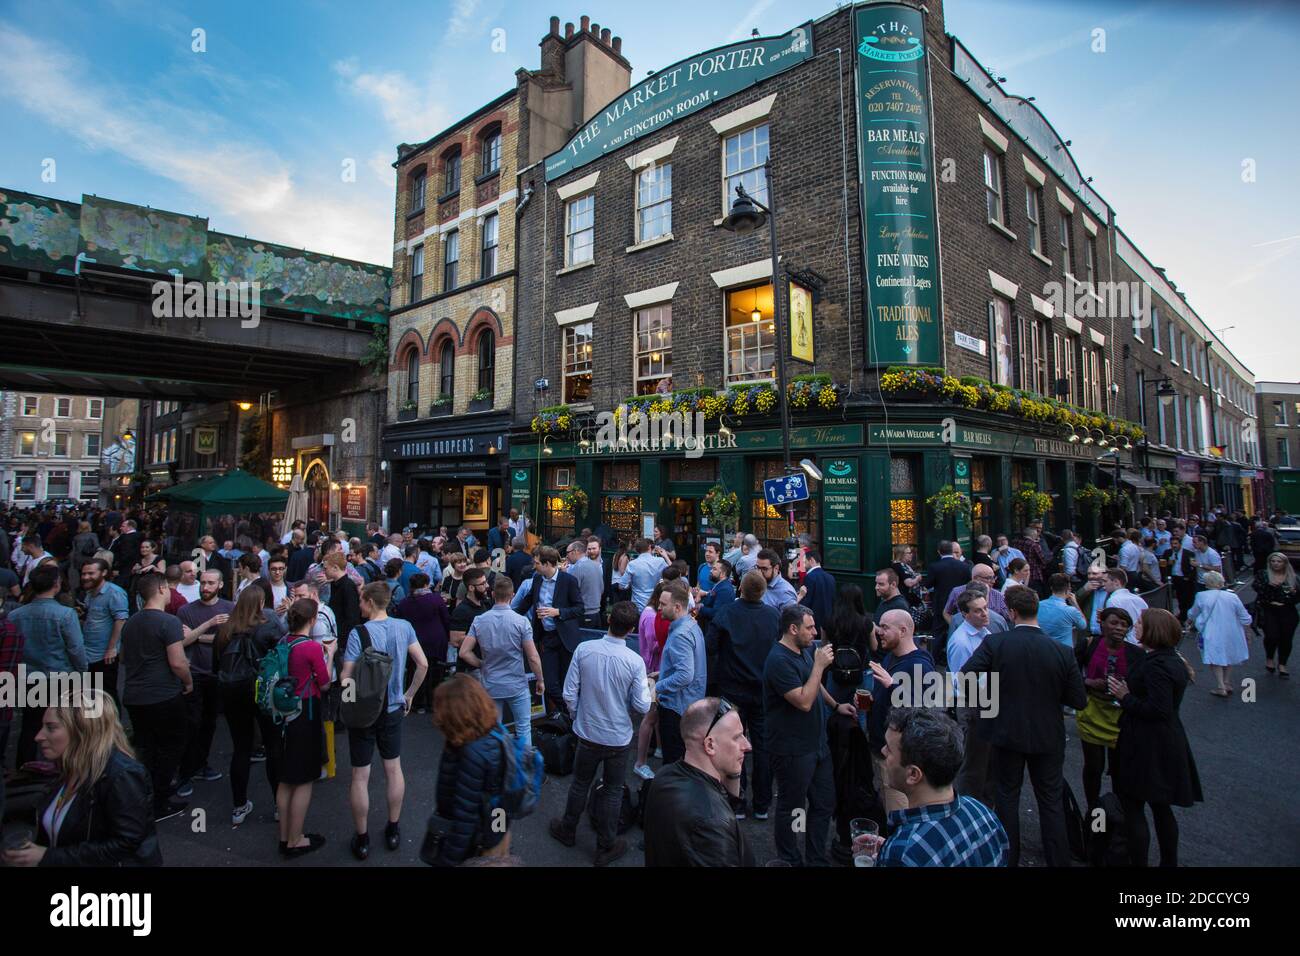 Les personnes qui boivent en dehors du marché Porter Pub, Borough Market, London, England Banque D'Images